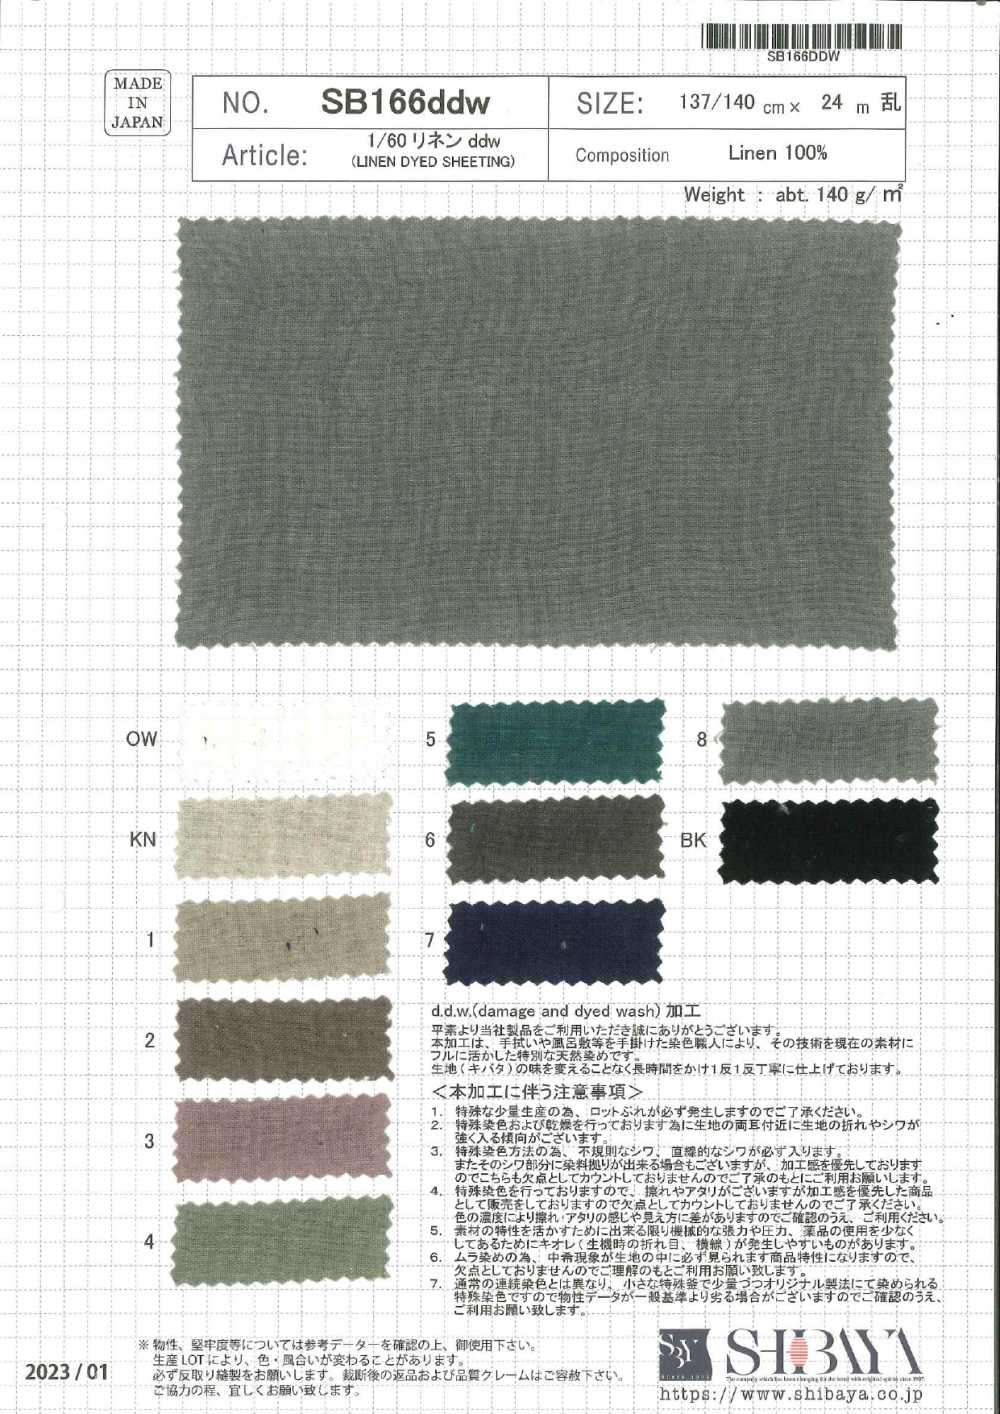 SB166ddw 1/60 Leinen Ddw[Textilgewebe] SHIBAYA